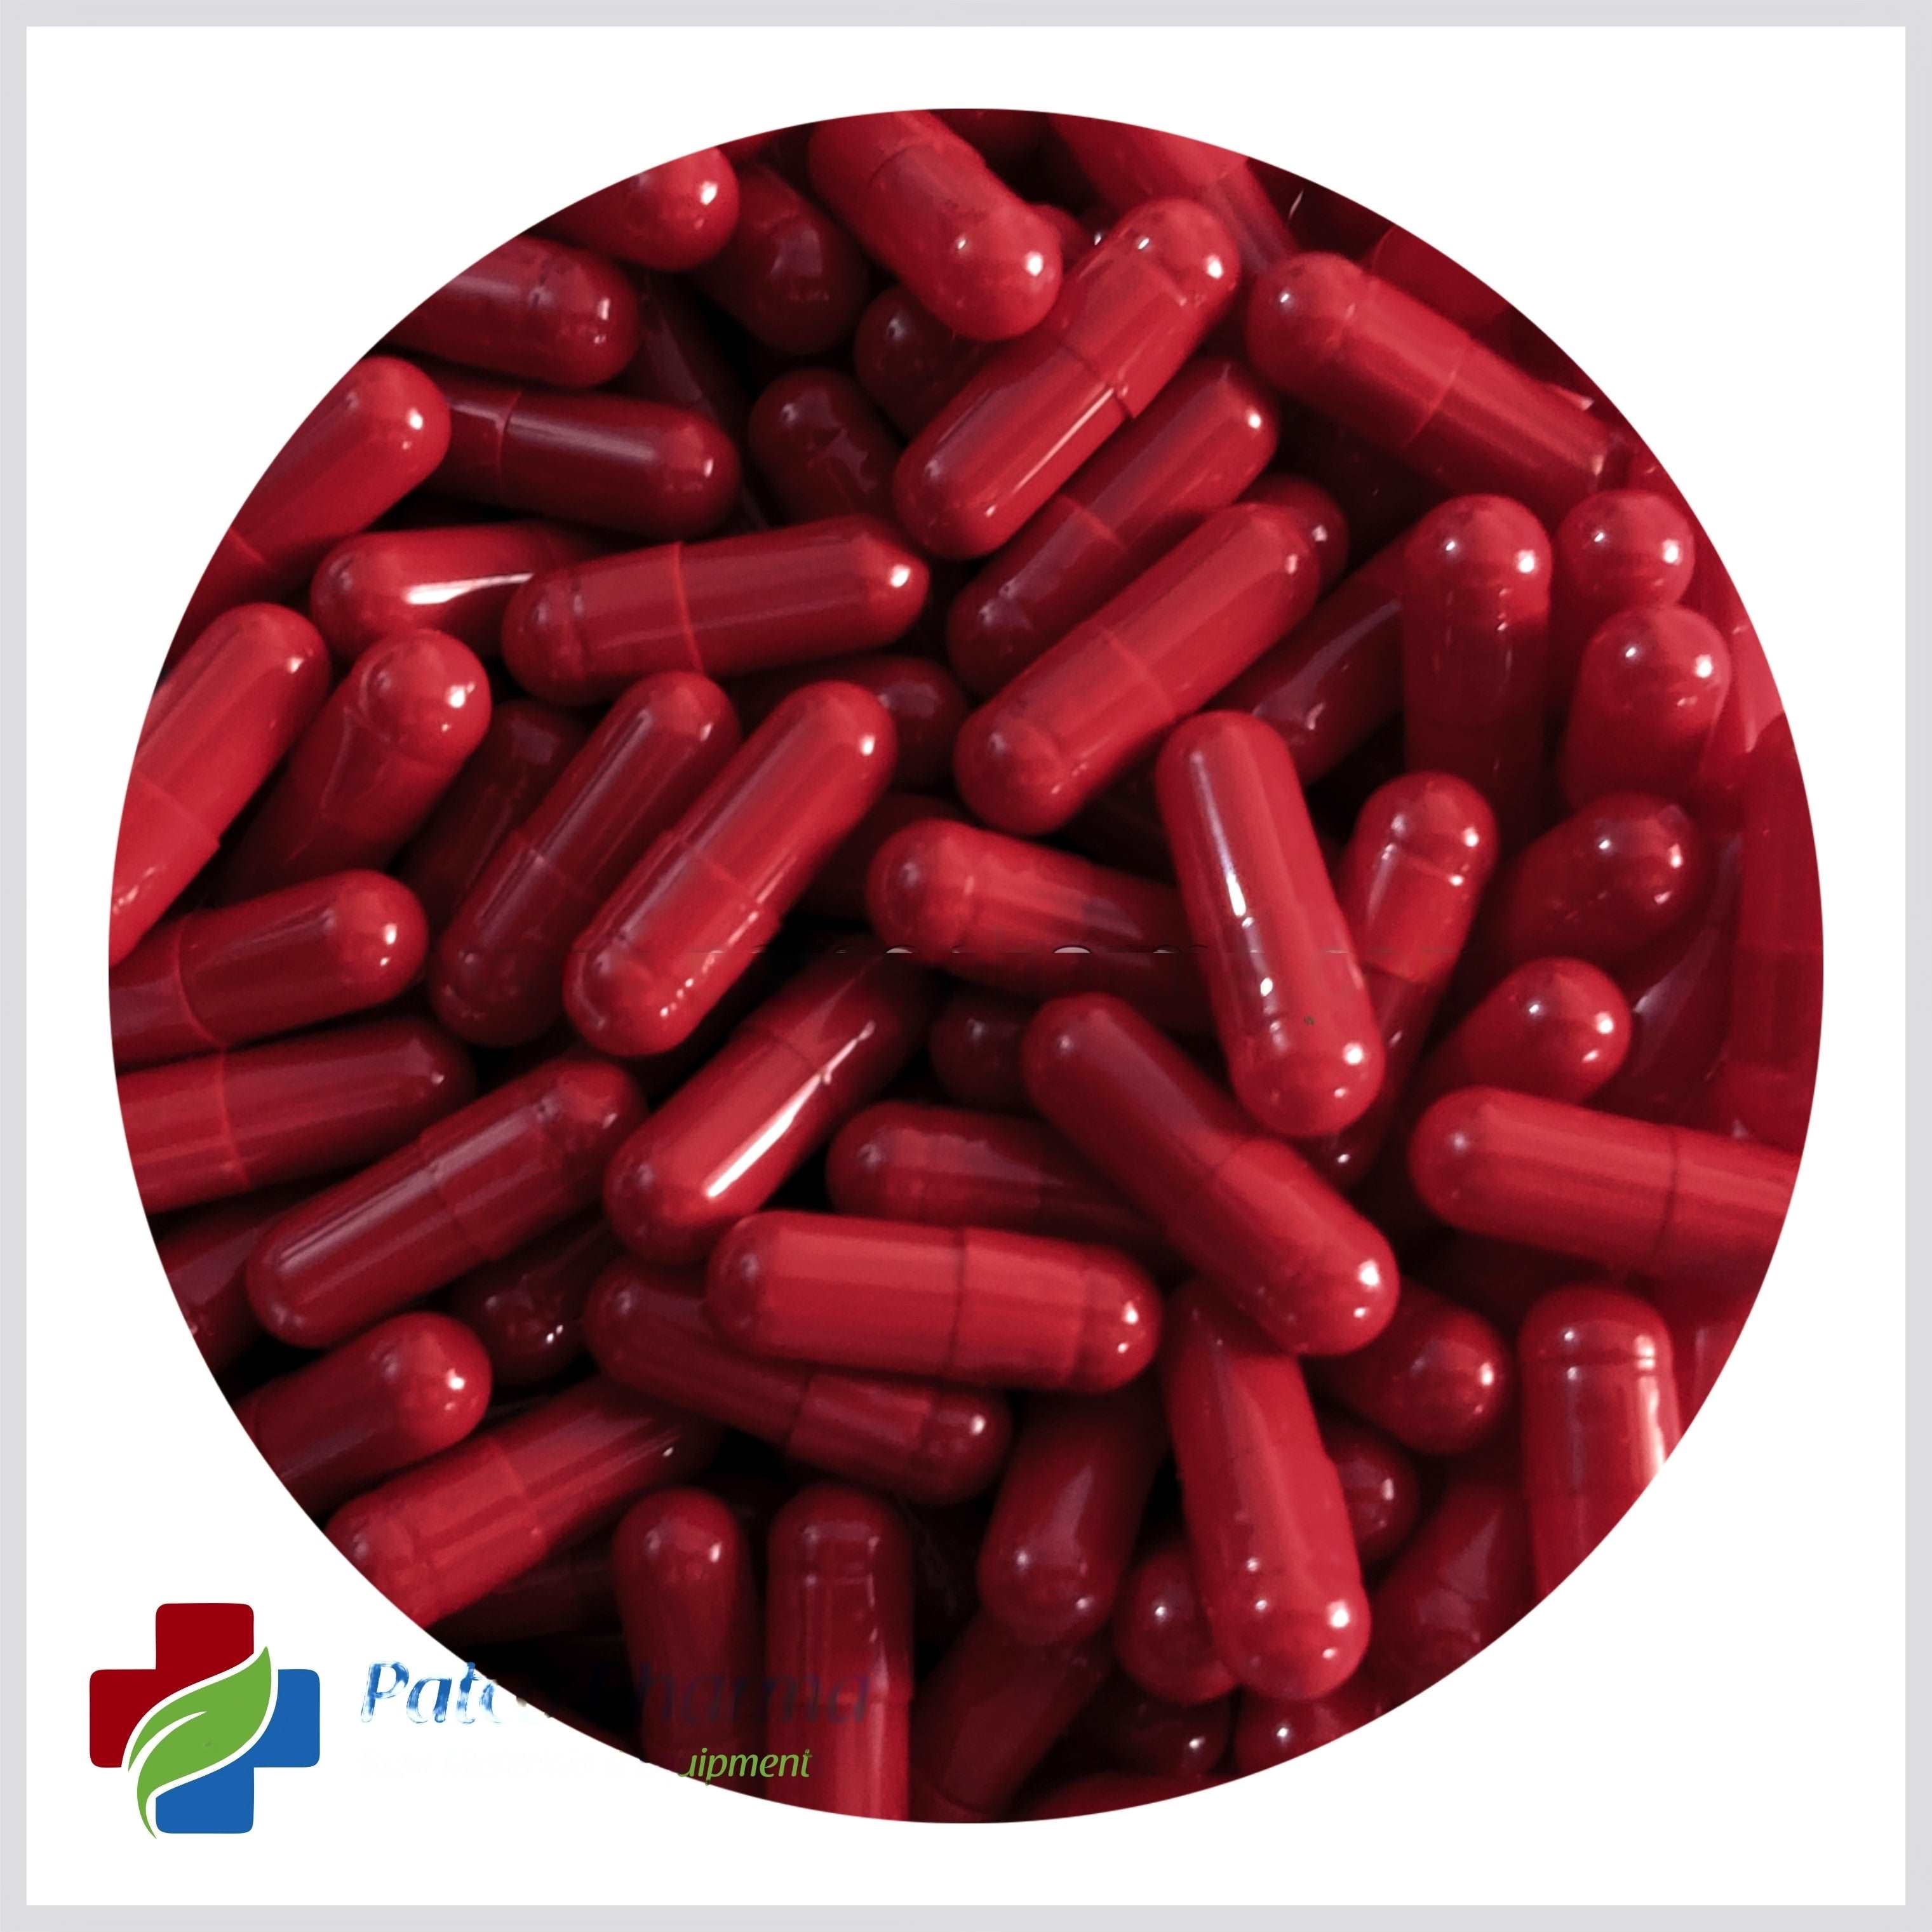 Size 00 Red Empty Gelatin Capsule, Patco Pharma, Gelatin Capsules, size-00-red-empty-gelatin-capsule, "1000 mg Capsule, Gelatin Capsule, Size 00 Capsule", Patco Pharma